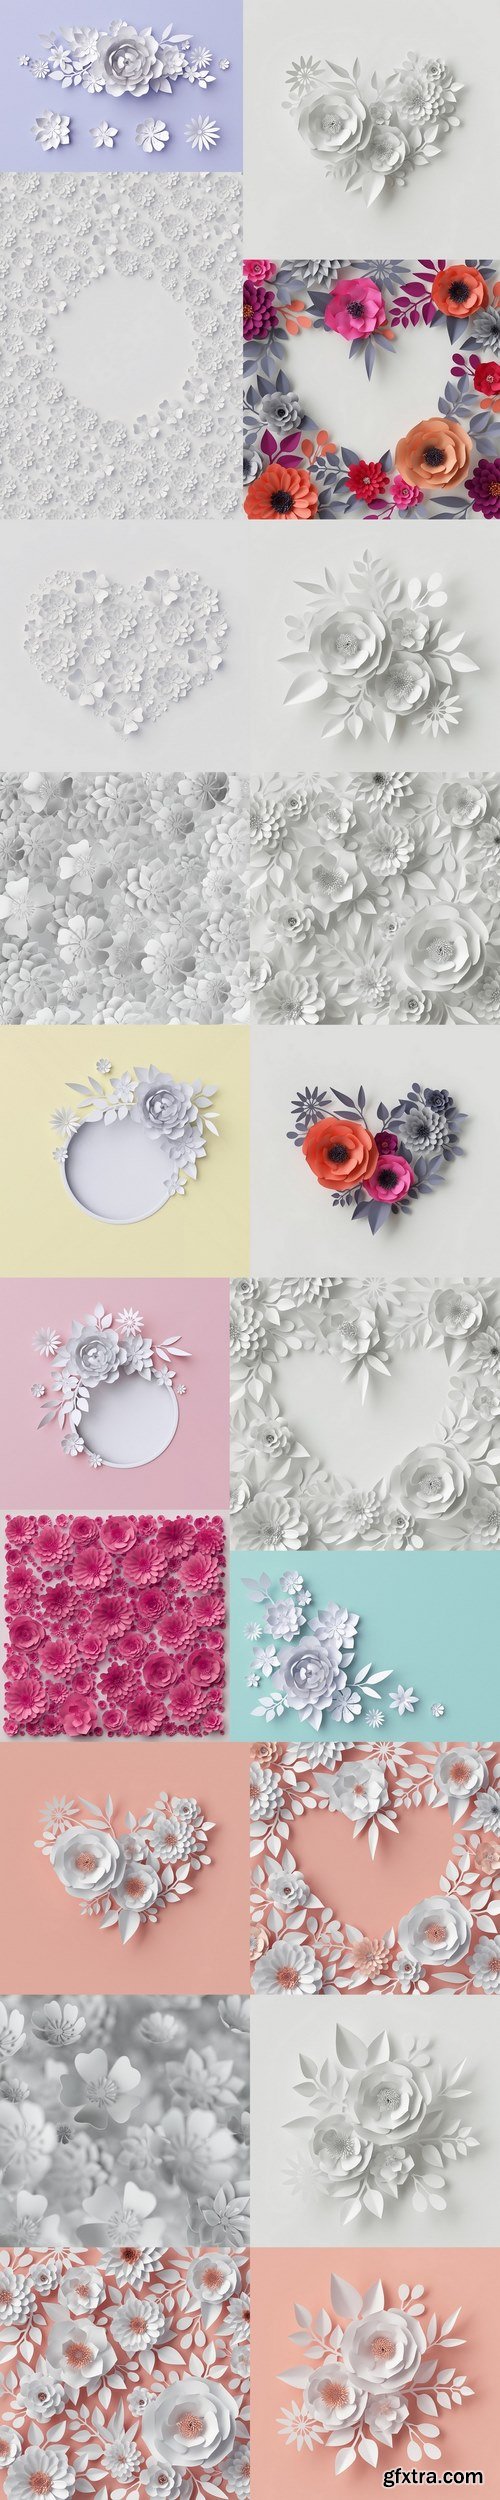 3d render, digital illustration, white paper flowers, floral background